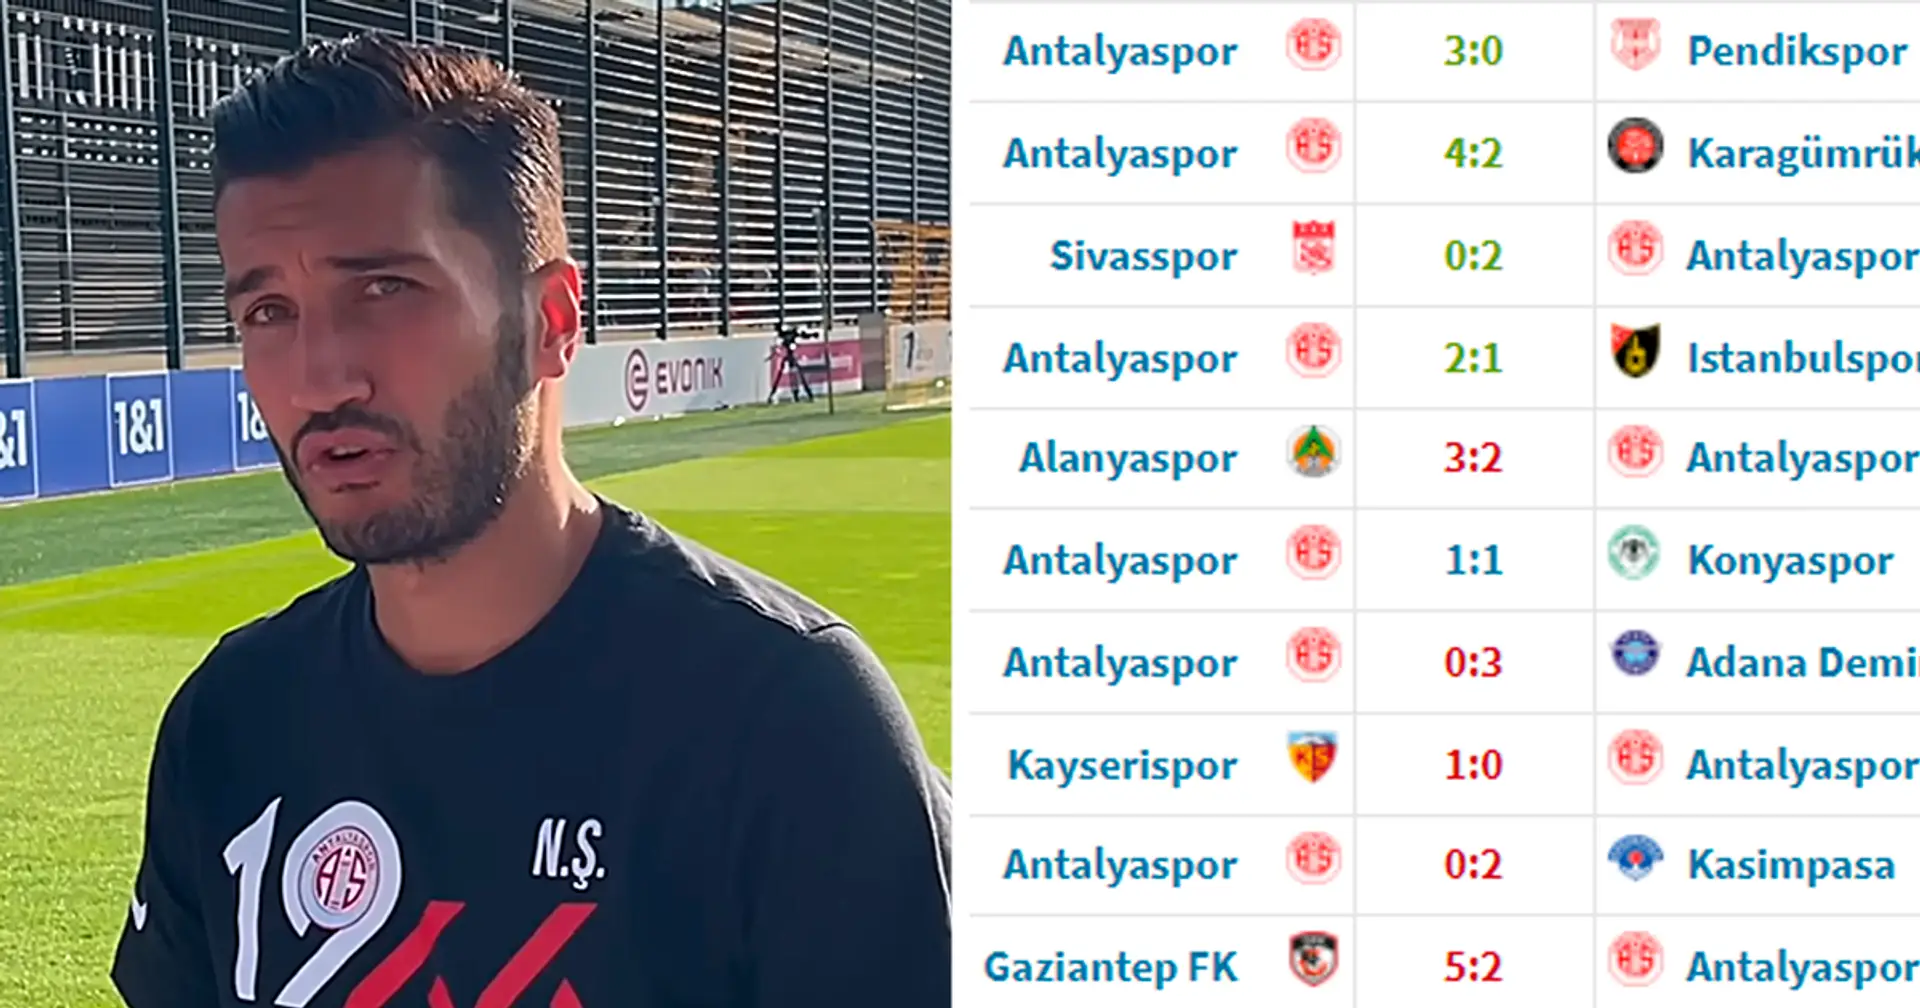 Instabilität ist das größte Problem: Sahins Bilanz bei Antalyaspor ist nicht beeindruckend